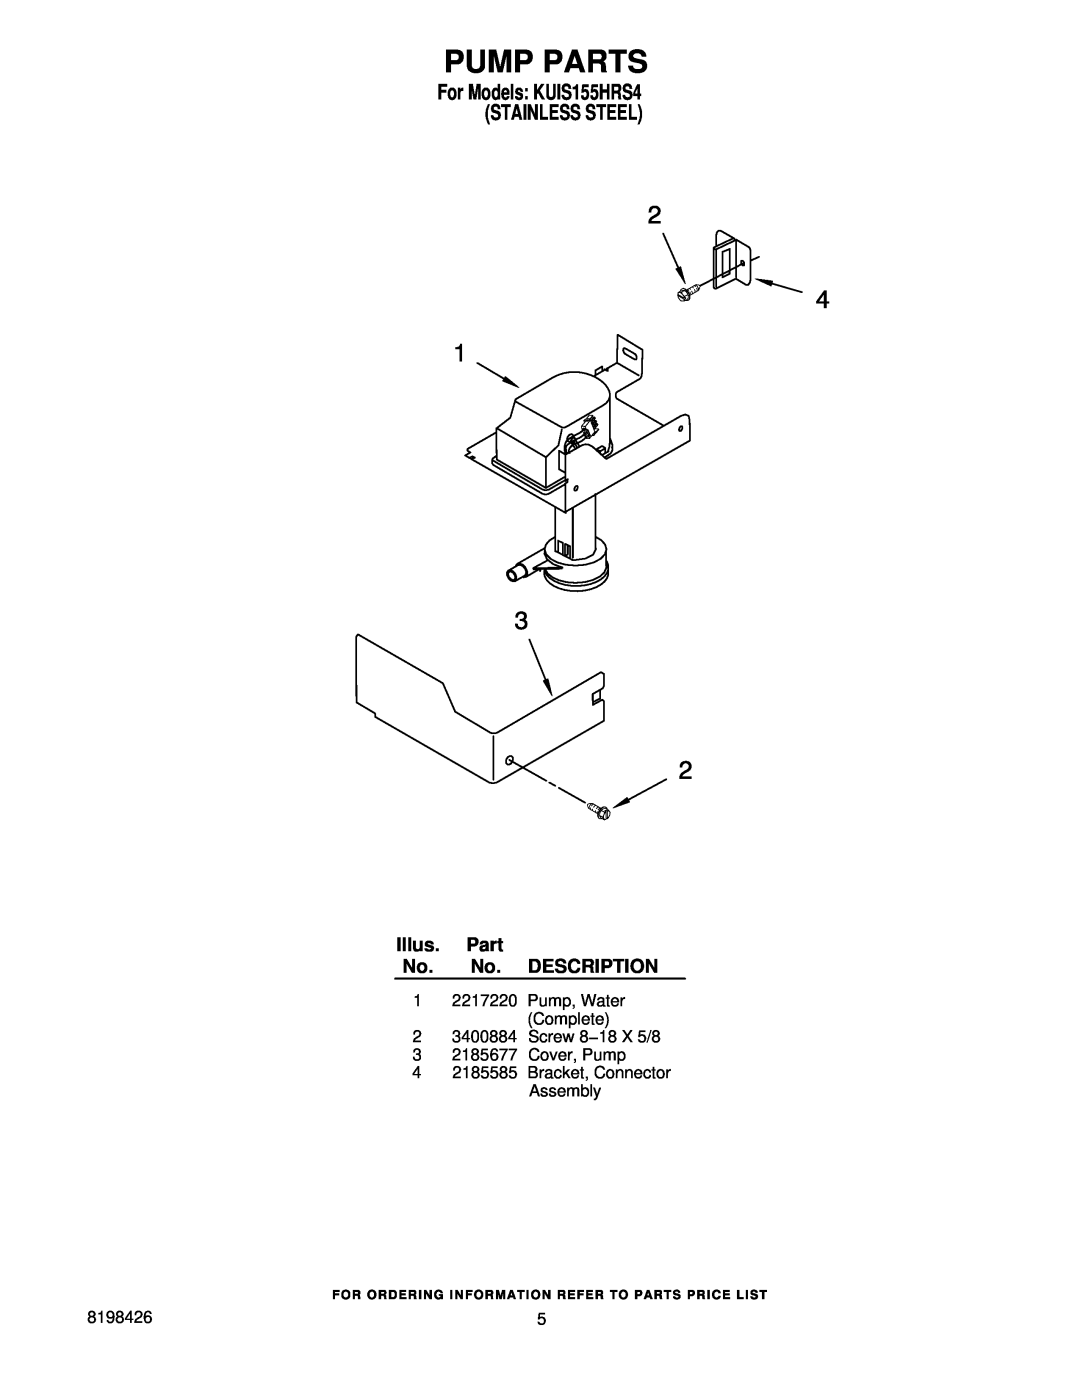 KitchenAid manual Pump Parts, For Models KUIS155HRS4 STAINLESS STEEL, Illus. Part No. No. DESCRIPTION 